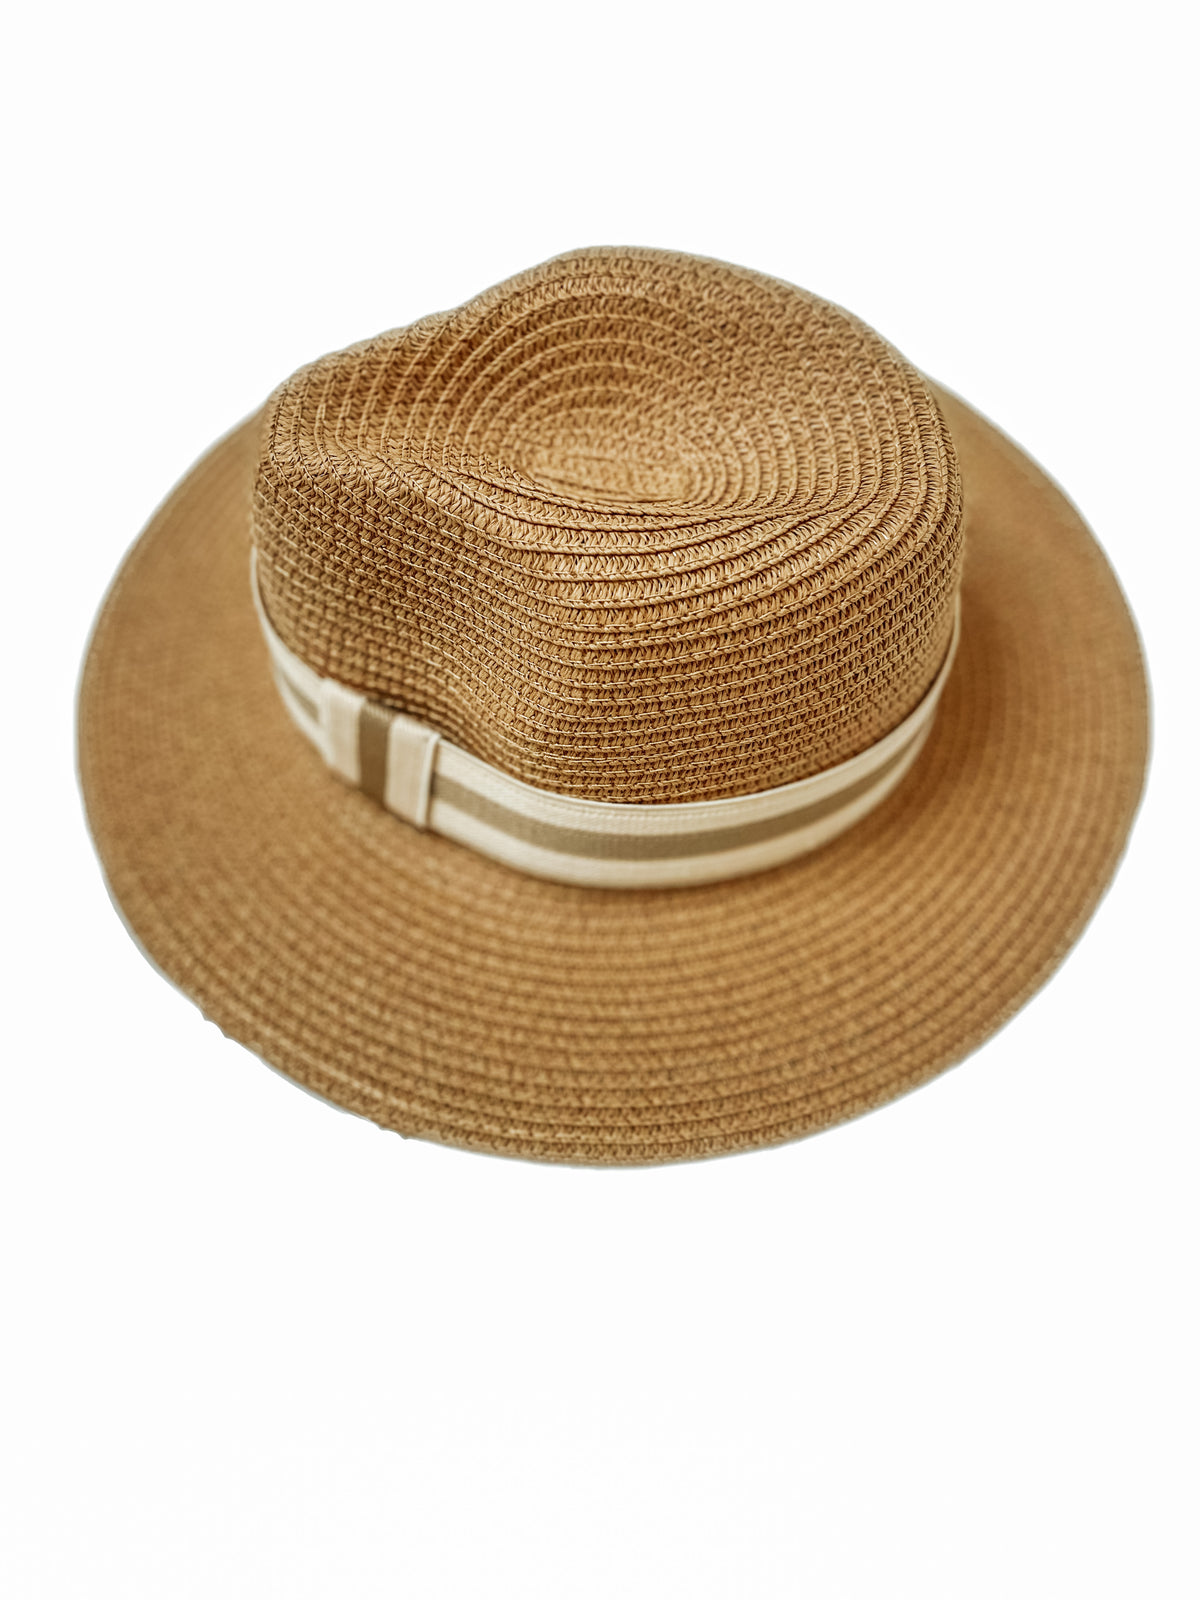 Beach Bum Beach Hat - Natural